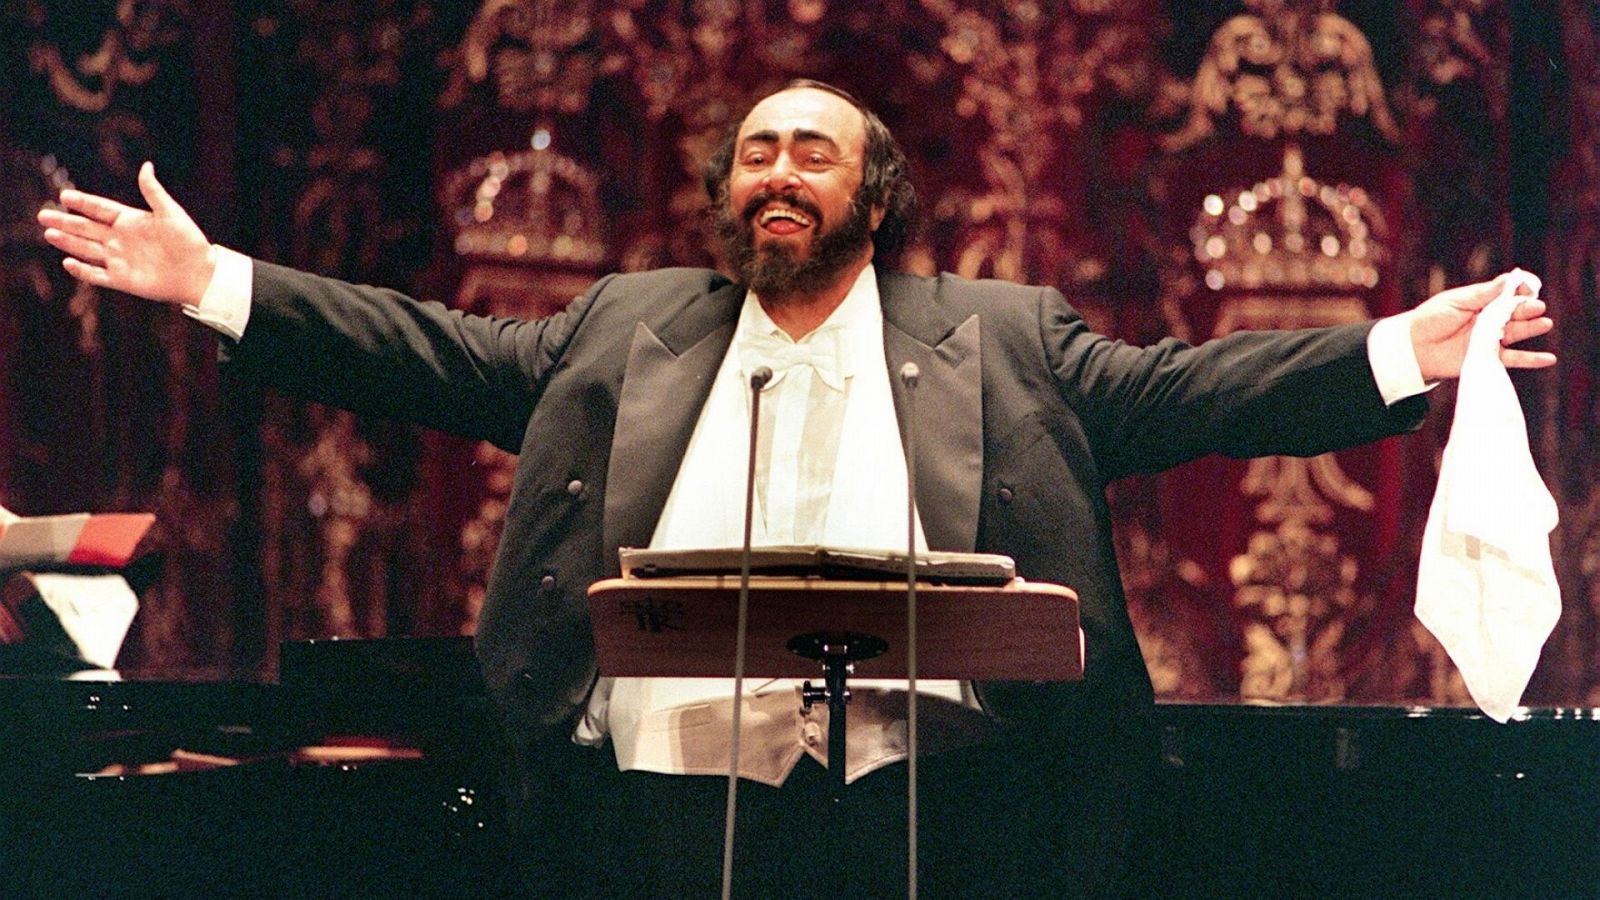 El tenor italiano Luciano Pavarotti ofreció esta noche en el Teatro Real de Madrid